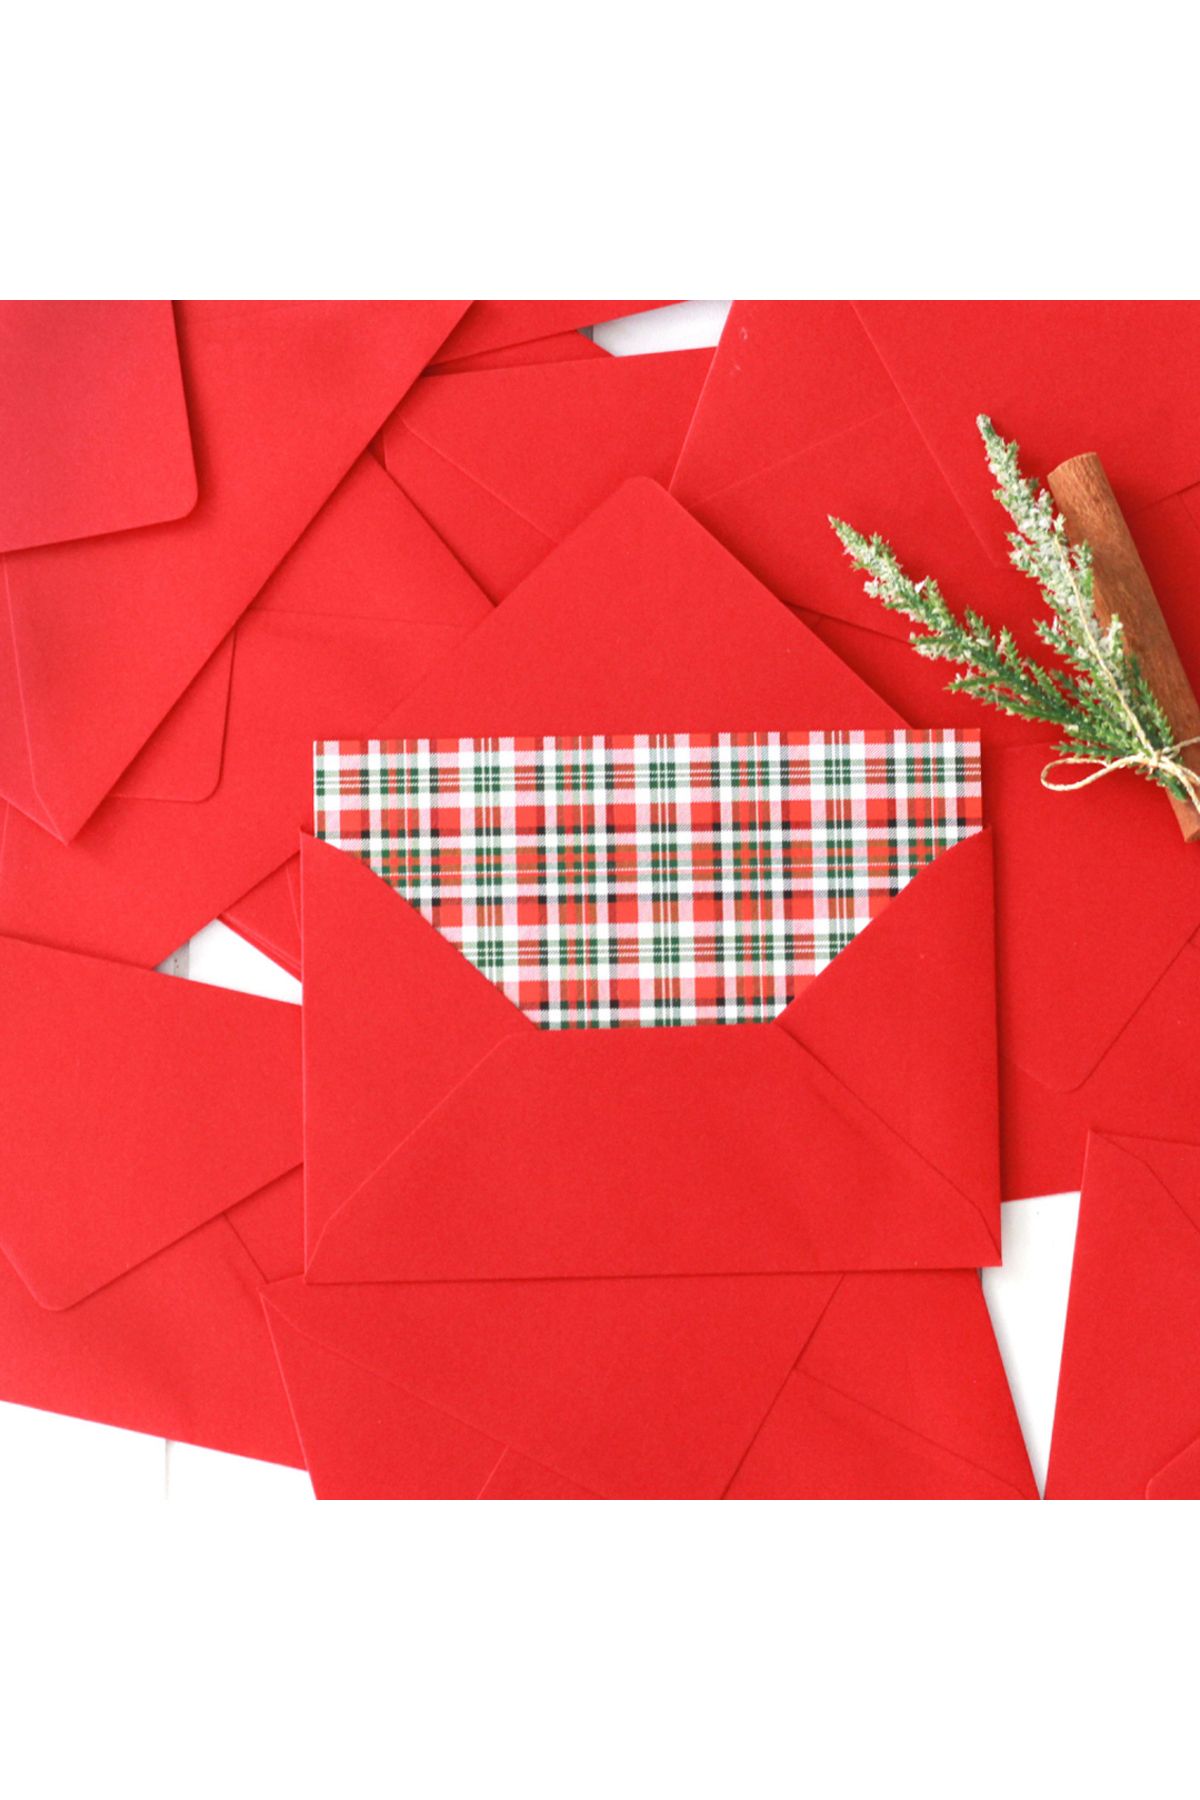 Bimotif Tebrik kartlarına özel zarf, 9x14 cm, Kırmızı, 100 adet